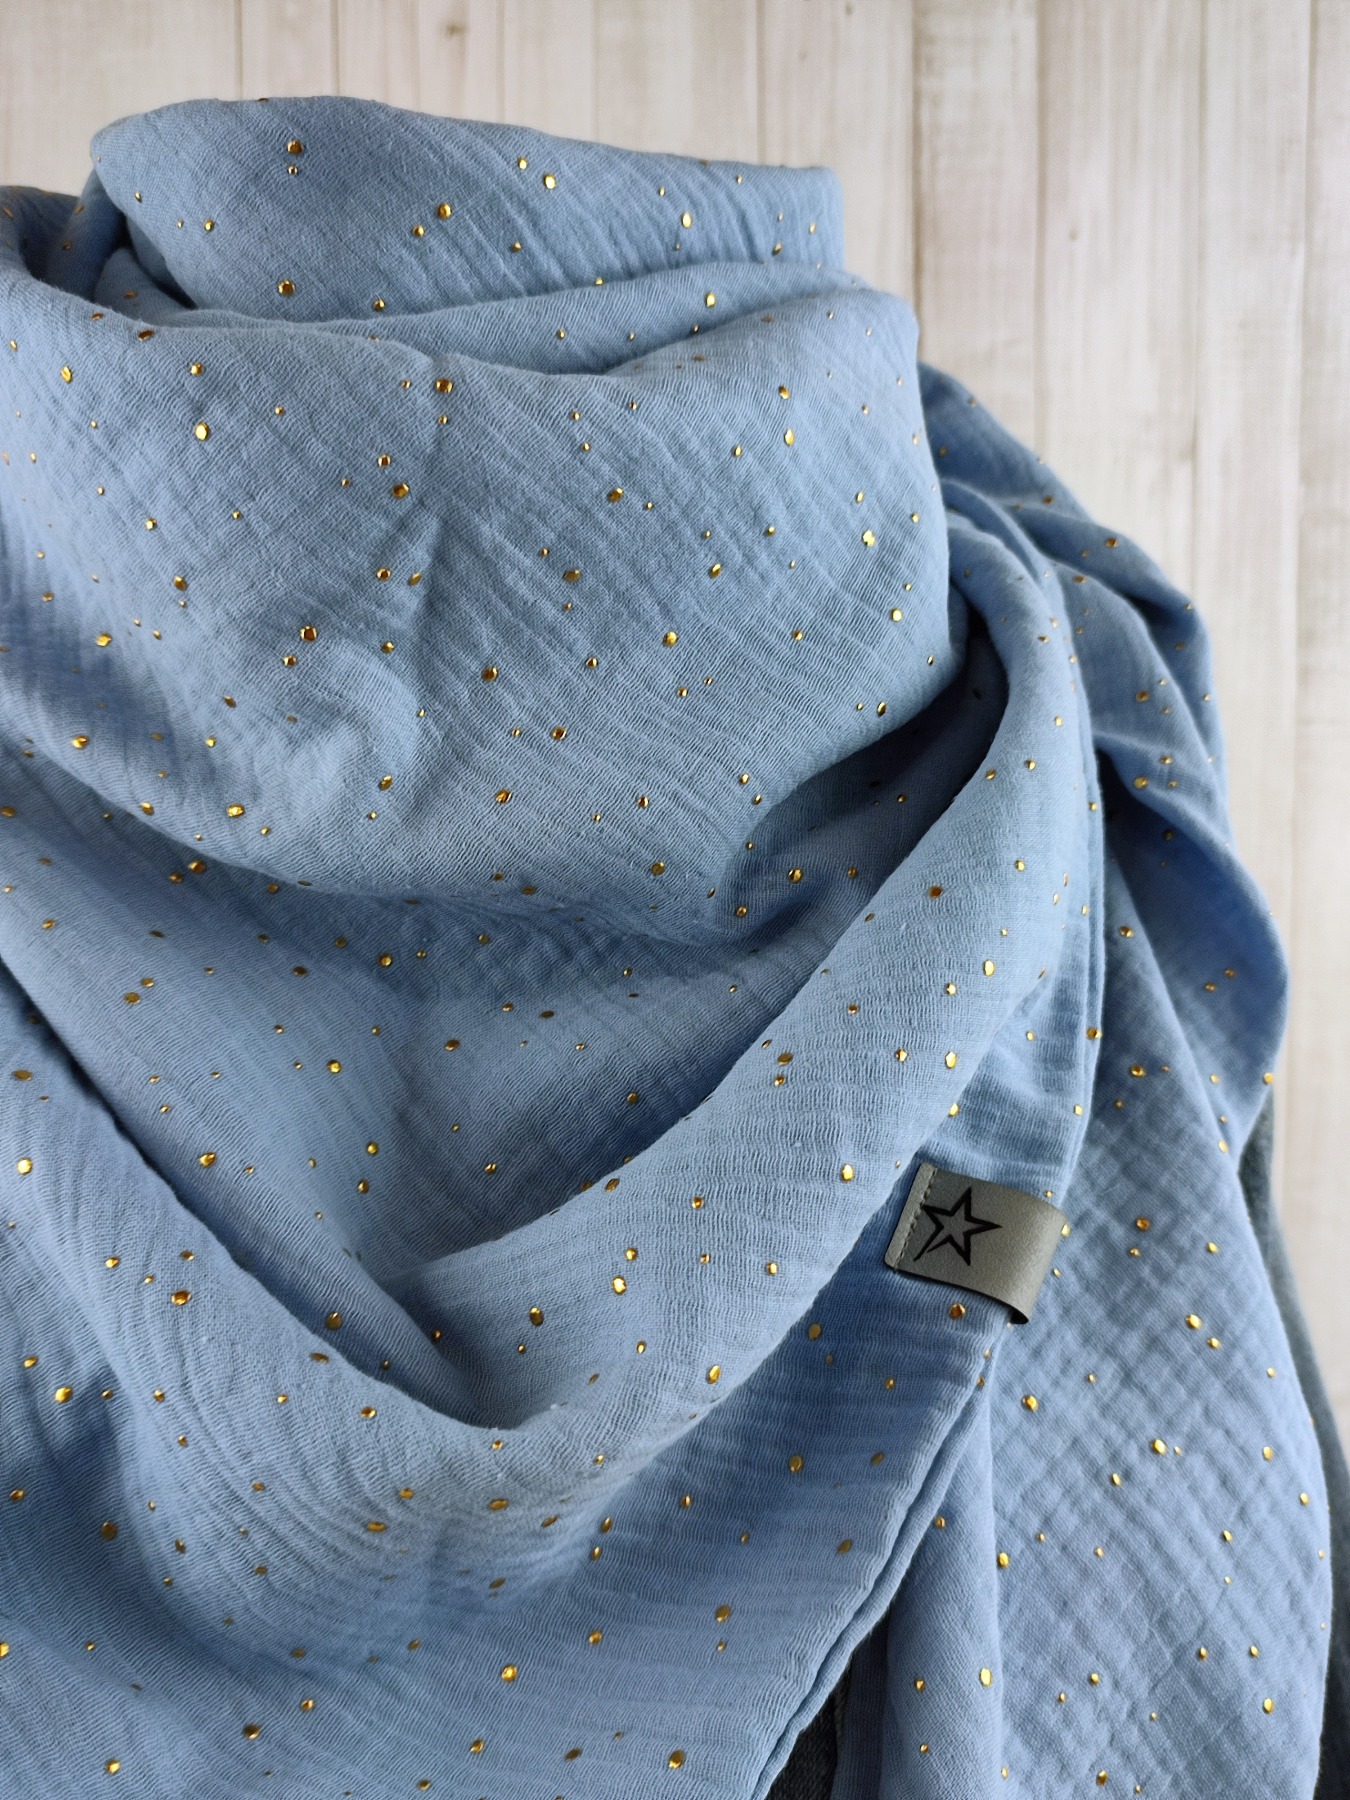 Tuch Dreieckstuch Musselin Damen Schal hellblau mit goldenen Punkten XXL Tuch aus Baumwolle Mamatuch 2